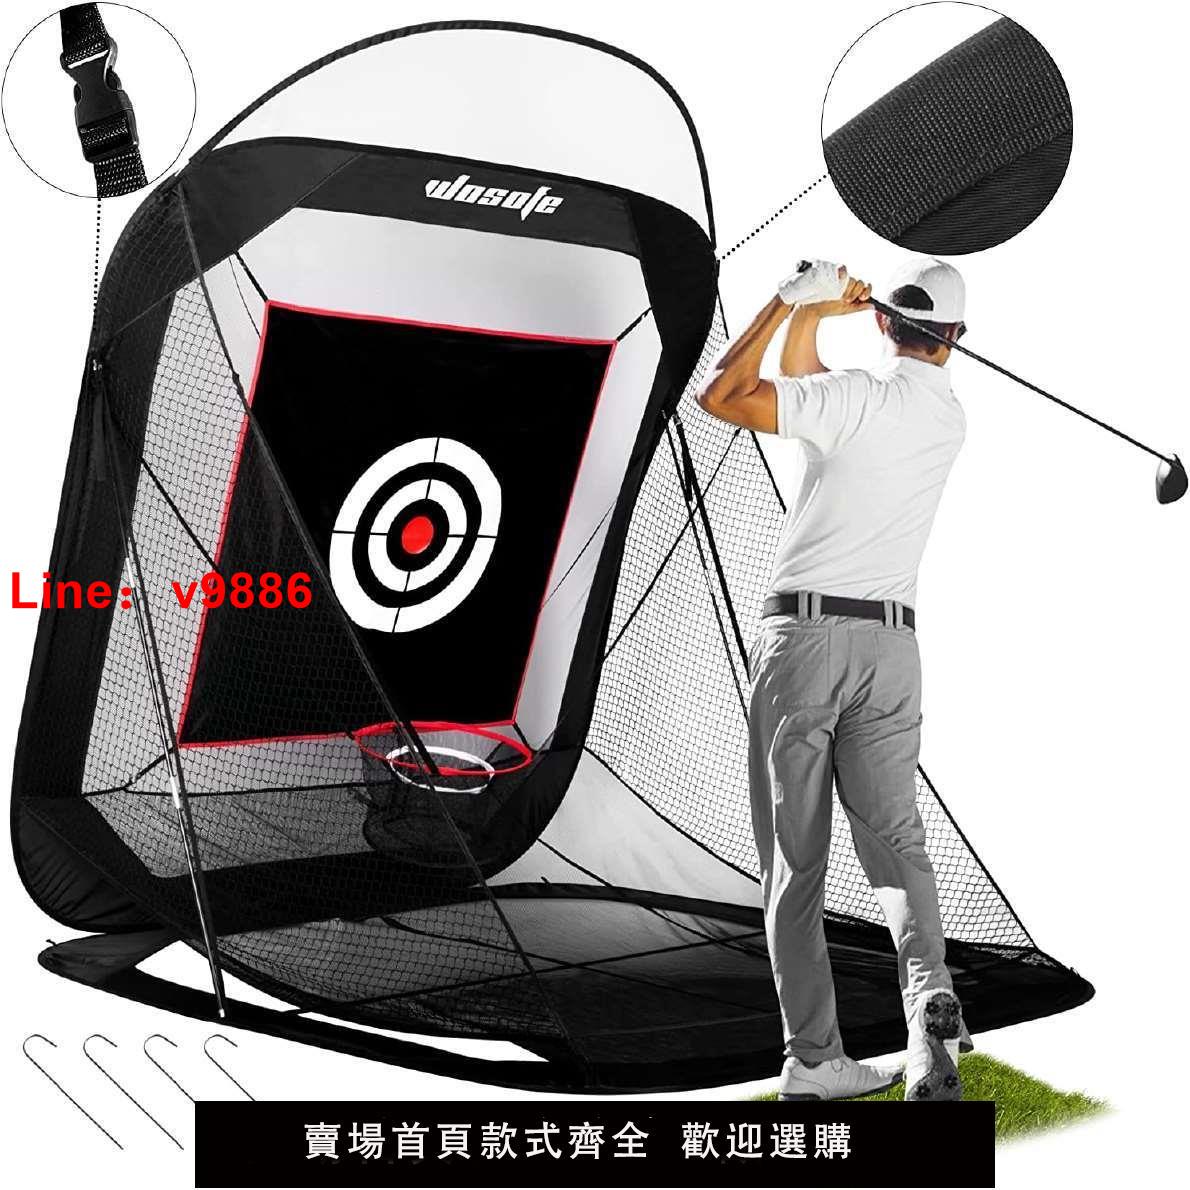 【台灣公司保固】新款高爾夫室內外揮桿切桿練習網自動回球可折疊易收納便攜包郵